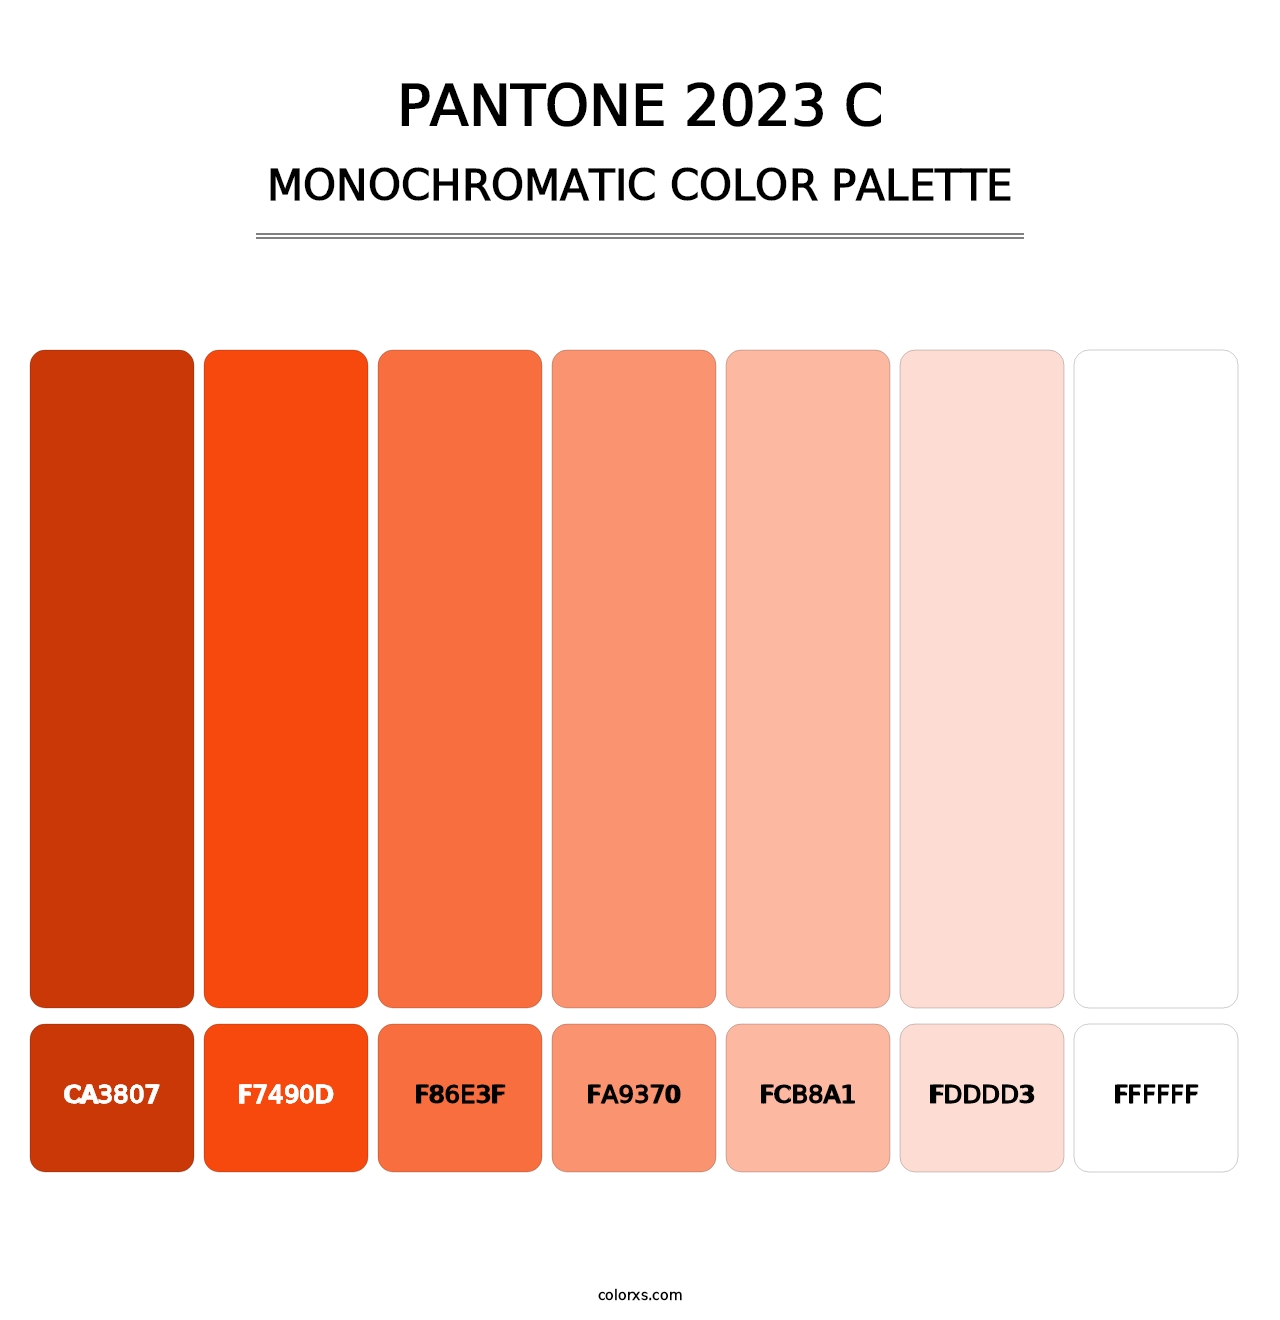 PANTONE 2023 C - Monochromatic Color Palette